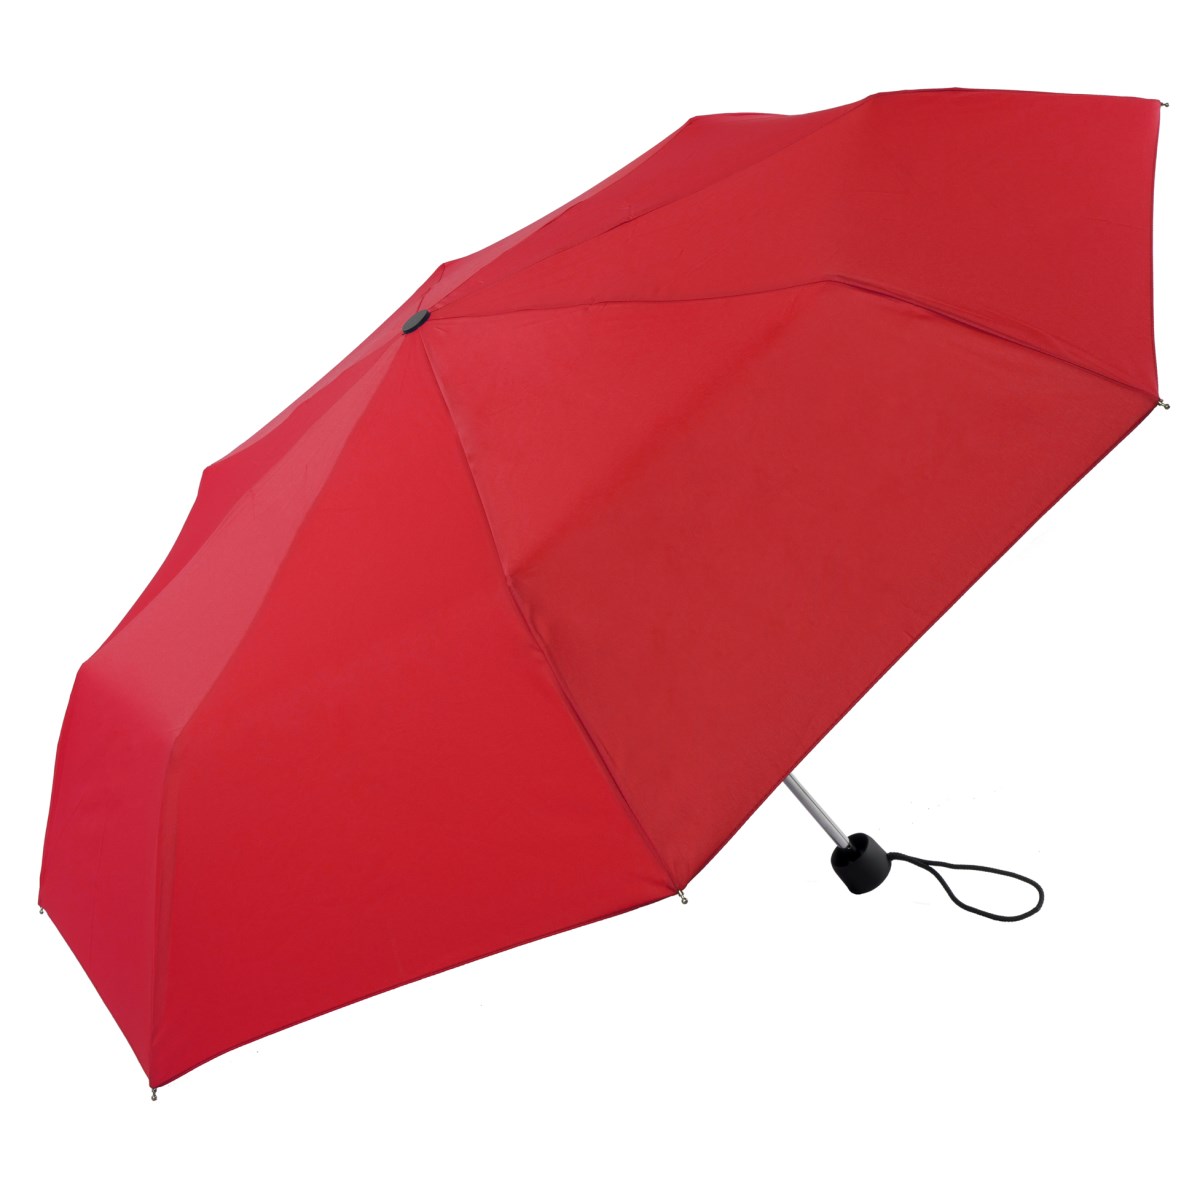 telescopic ladies red umbrellas wholesale ..